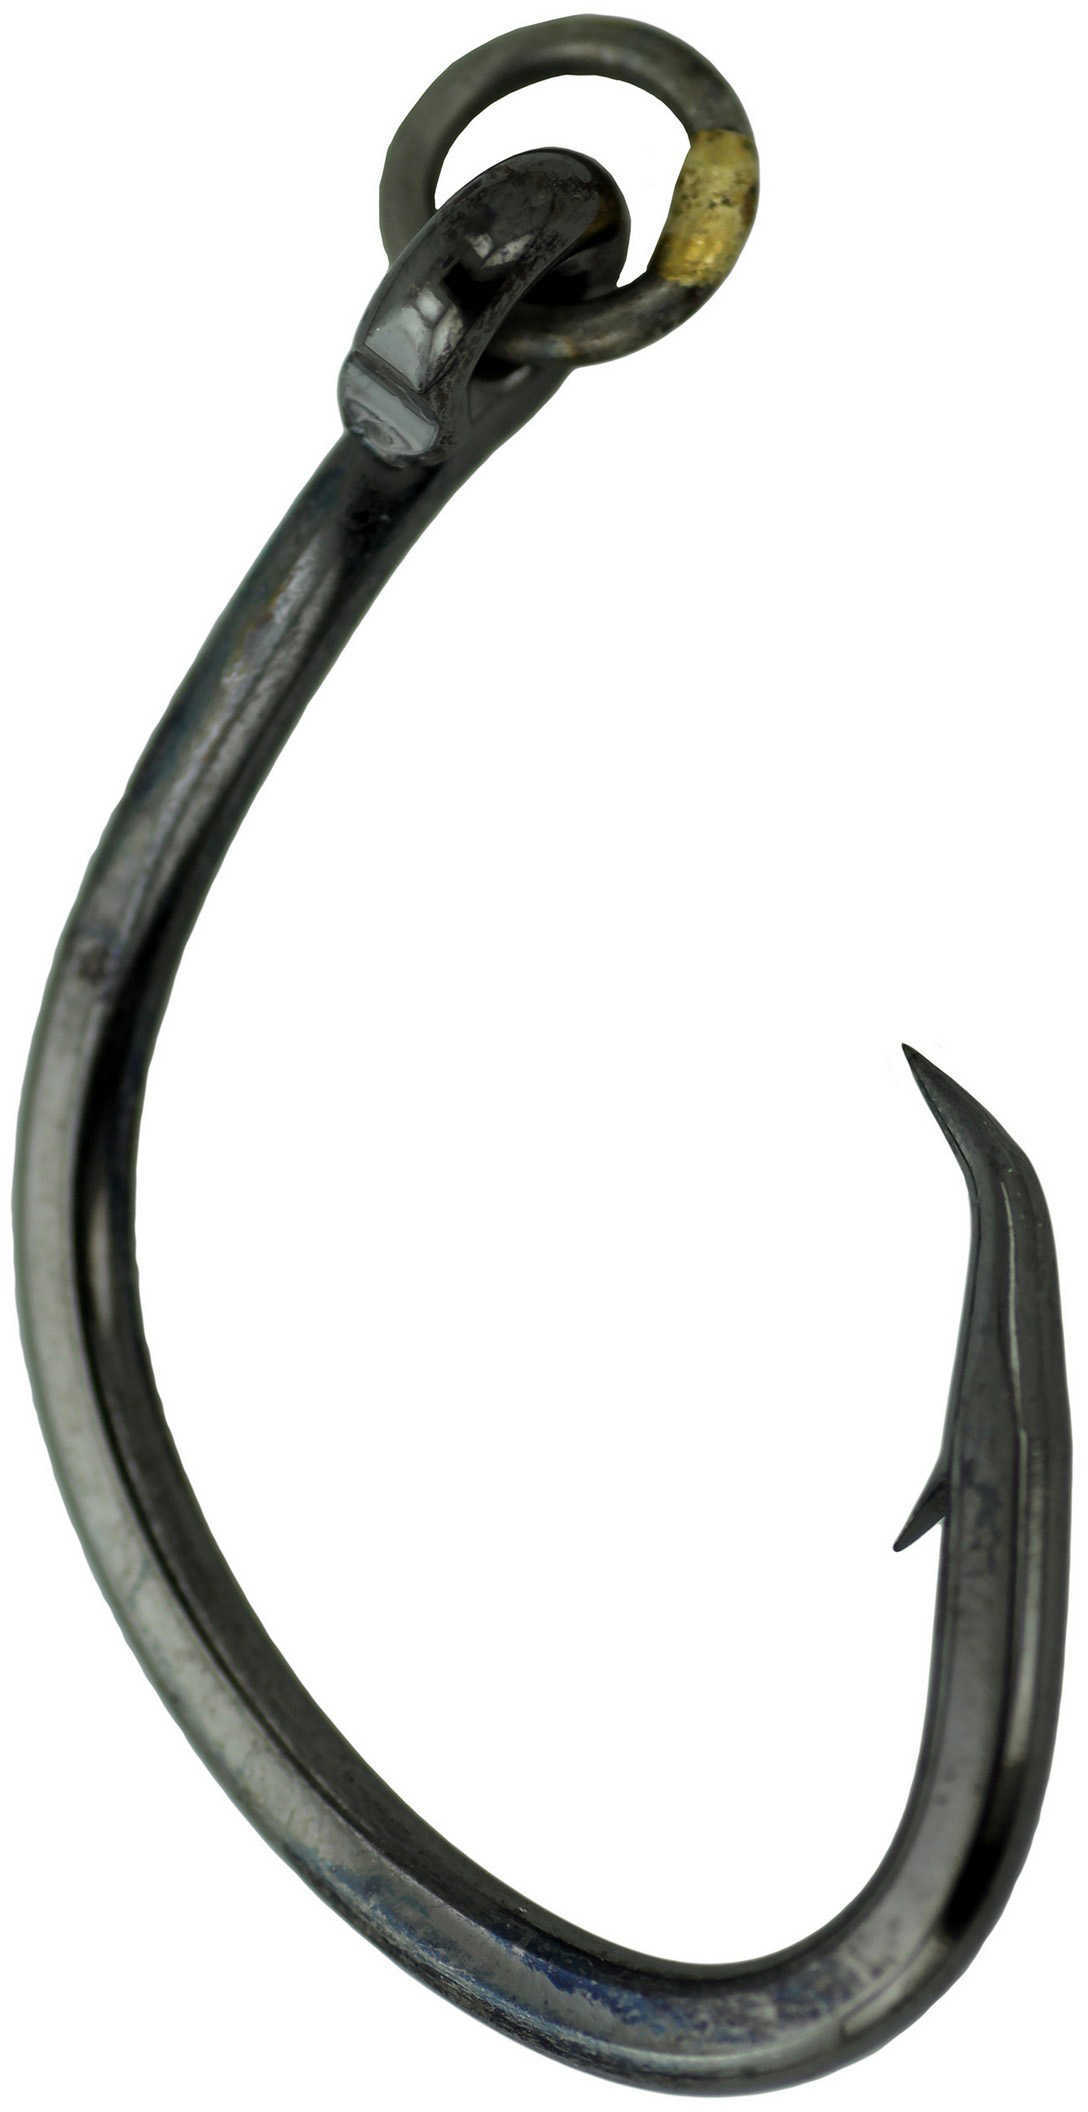 Gamakatsu / Spro Super Nautilus Circle Hook w/Ring Size 8/0 Md: 272418R